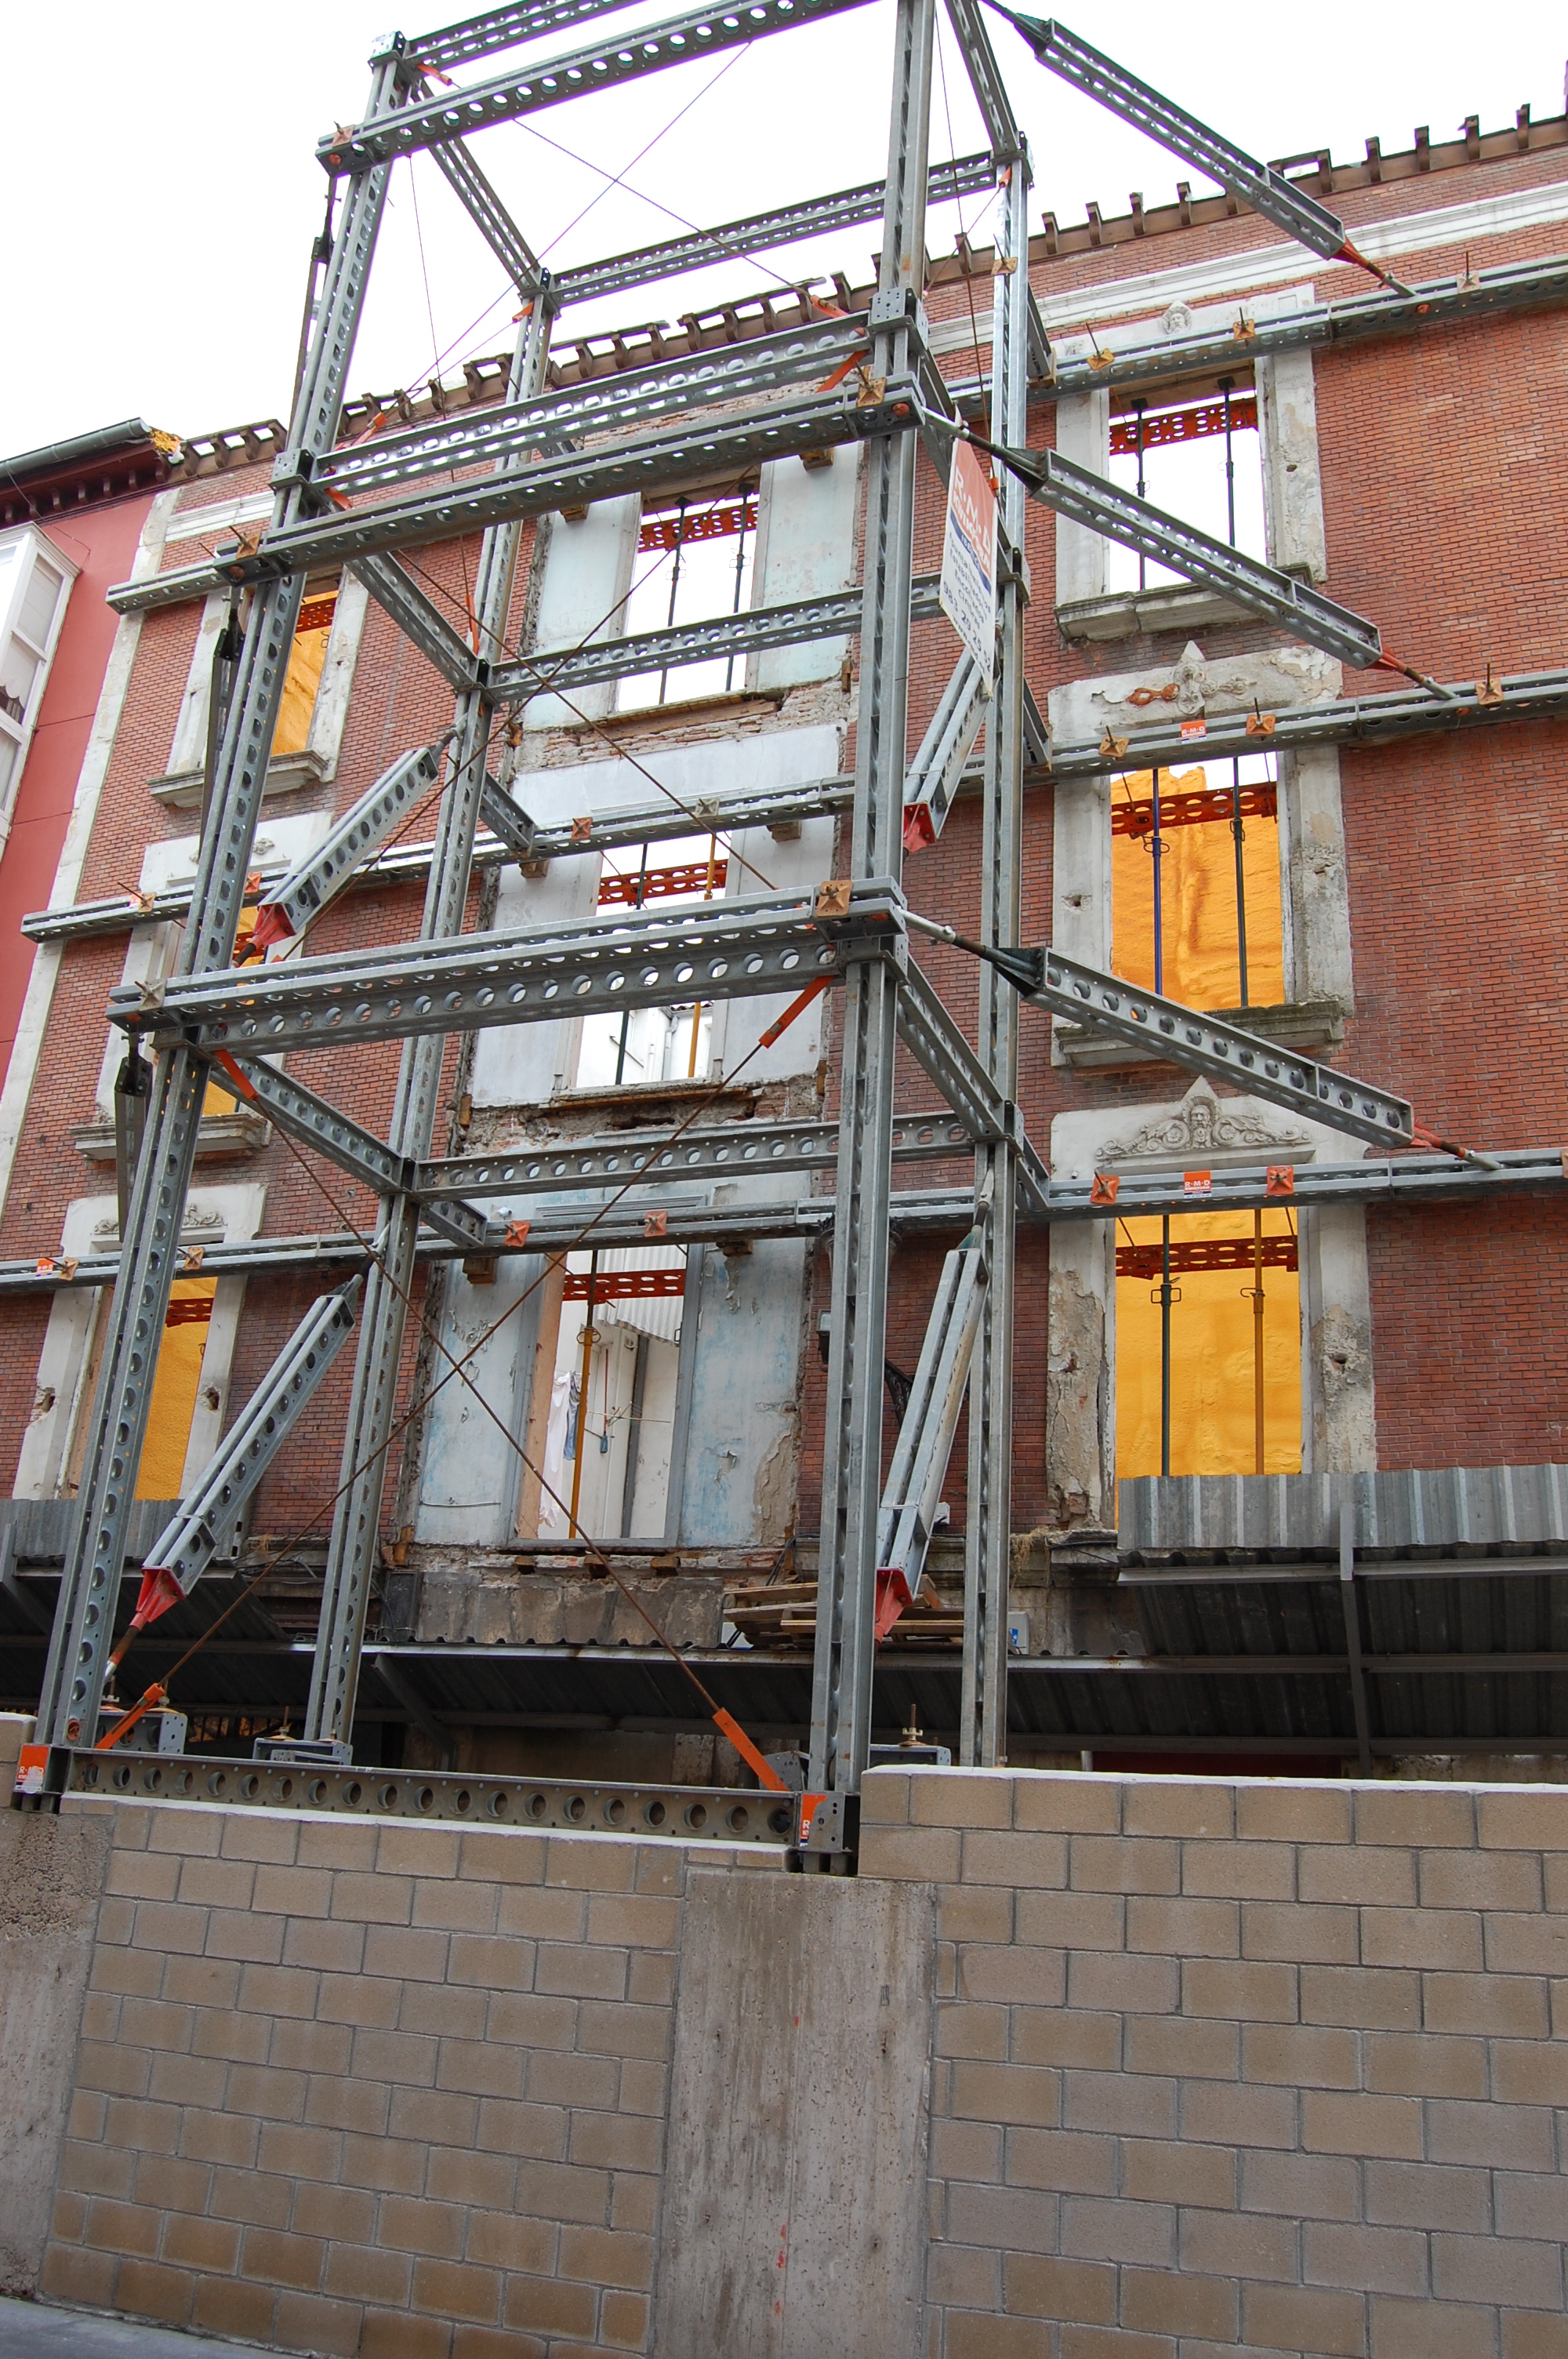 Foto de una facha de un edificio que se ha vaciado apuntalada mediante una estructura metálica auxiliar.